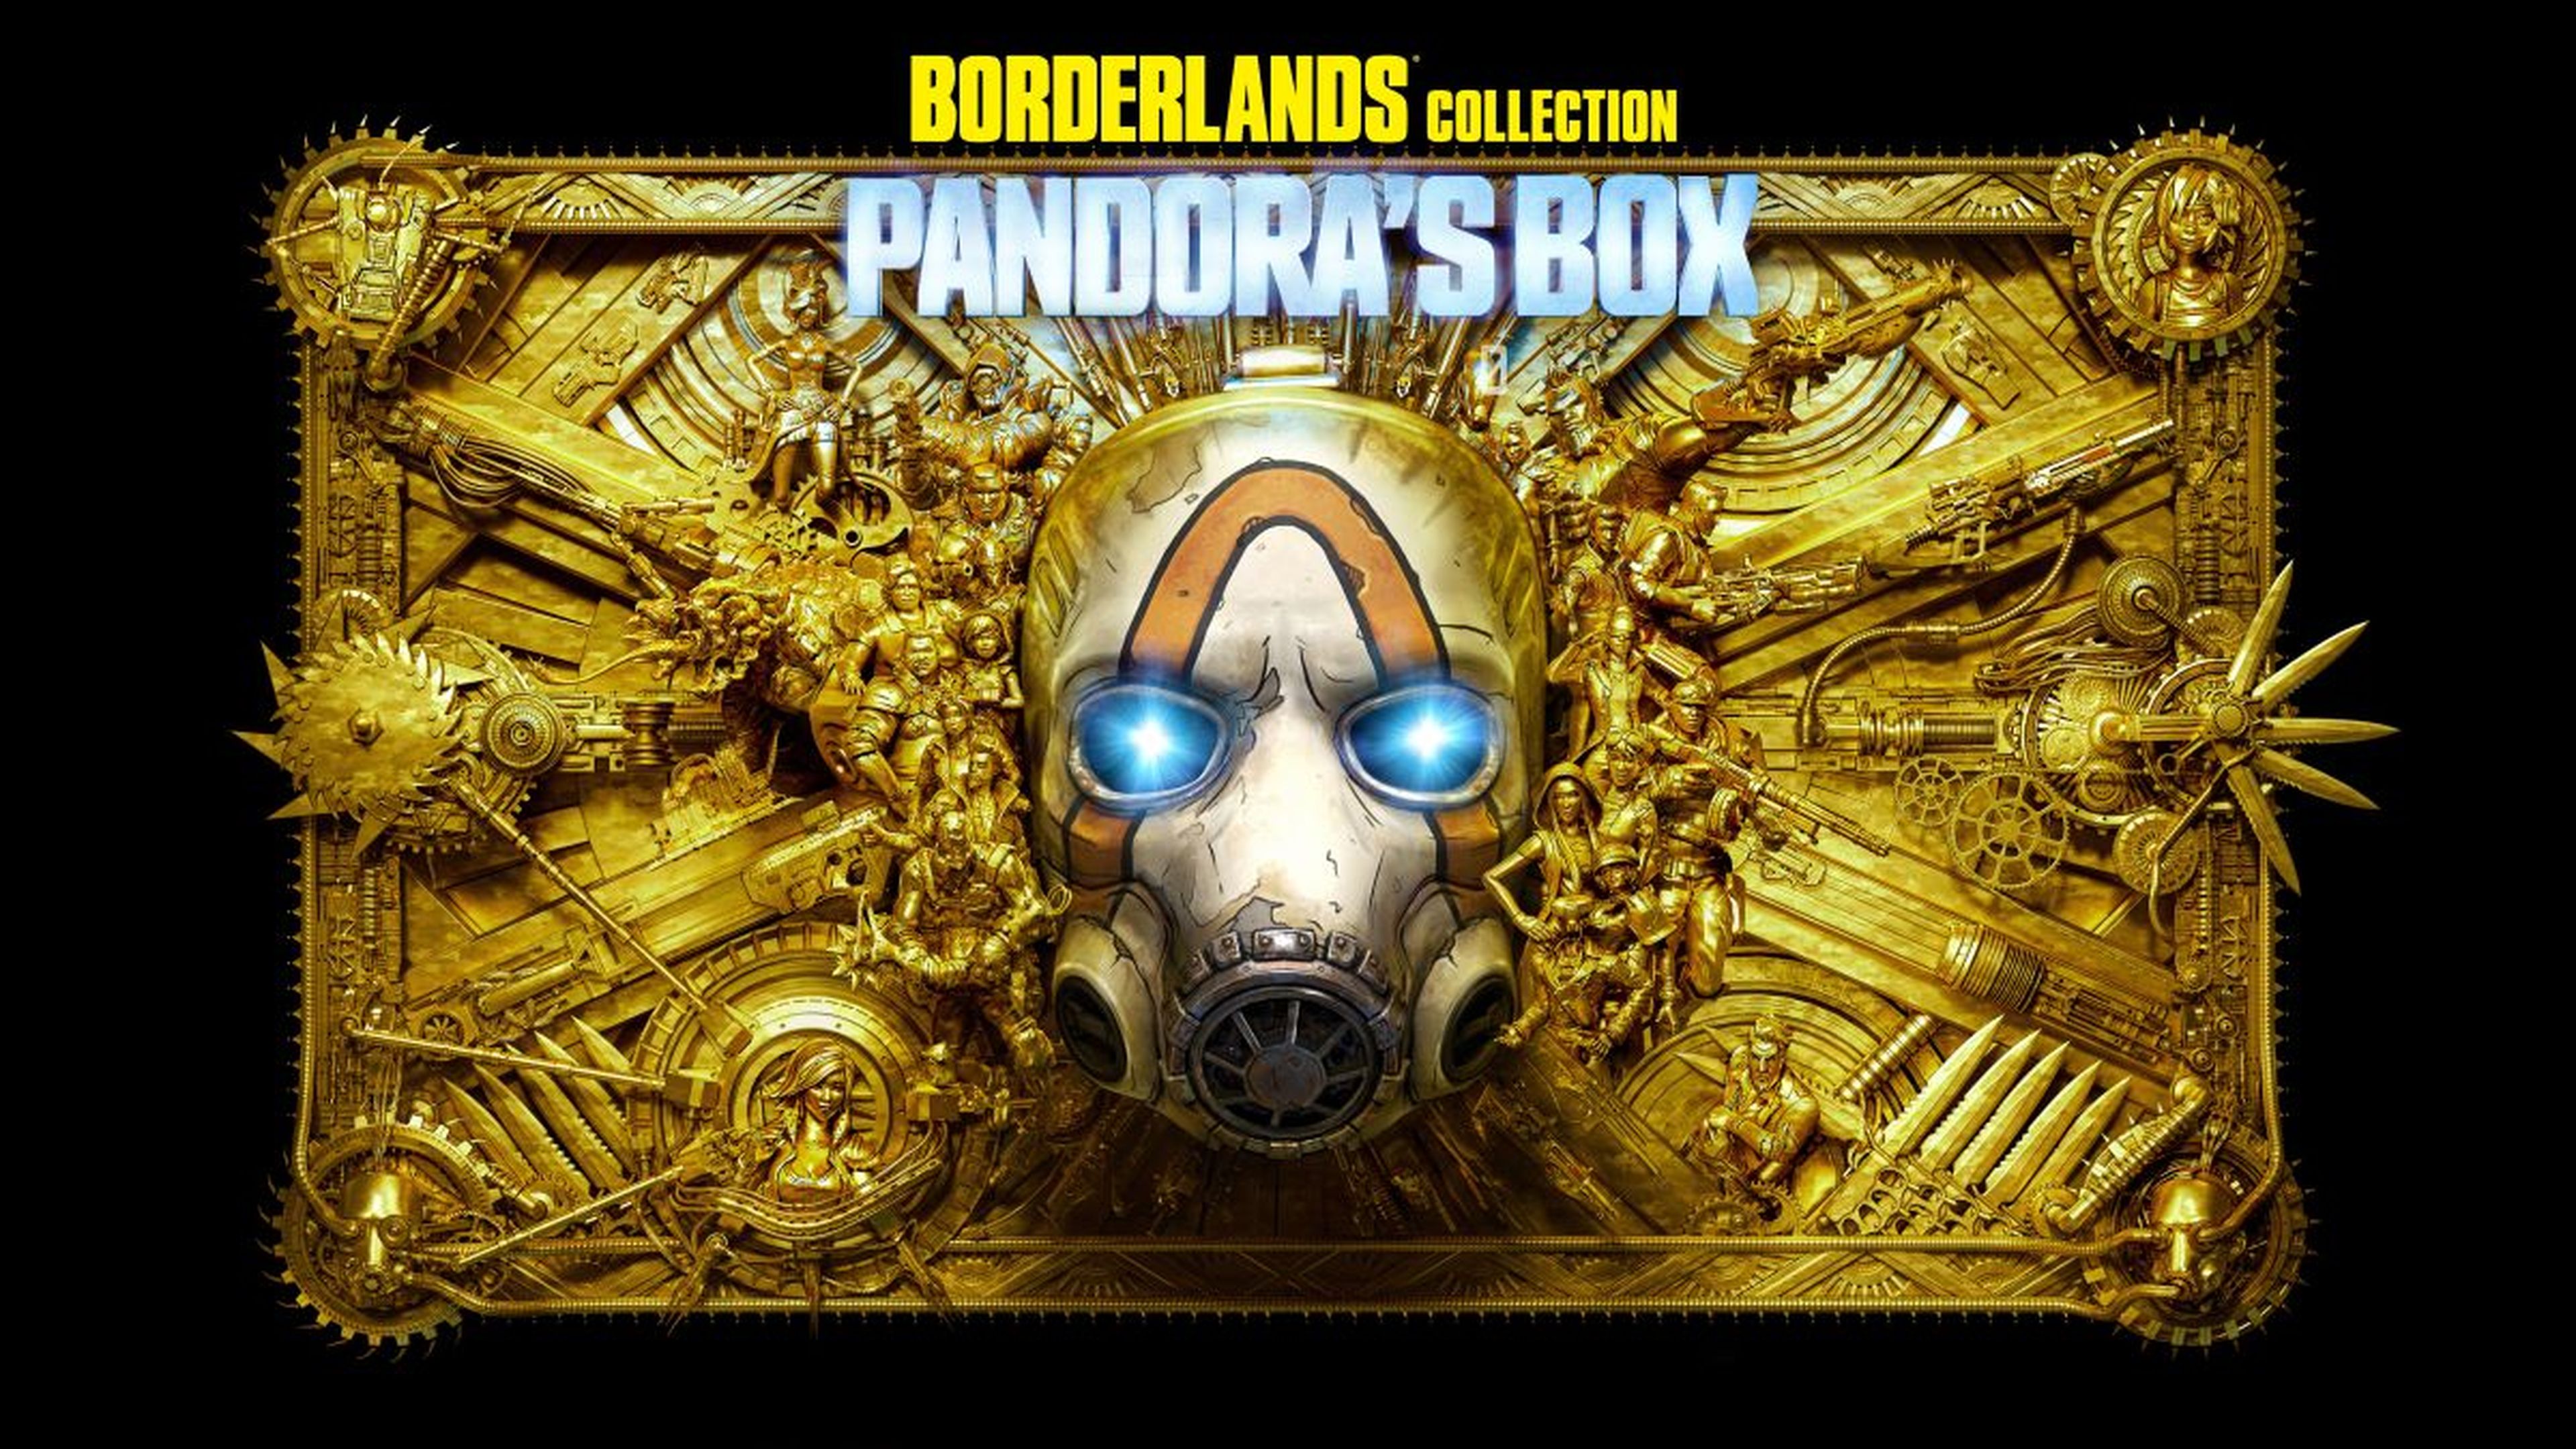 Borderlands Collection: Pandora Box